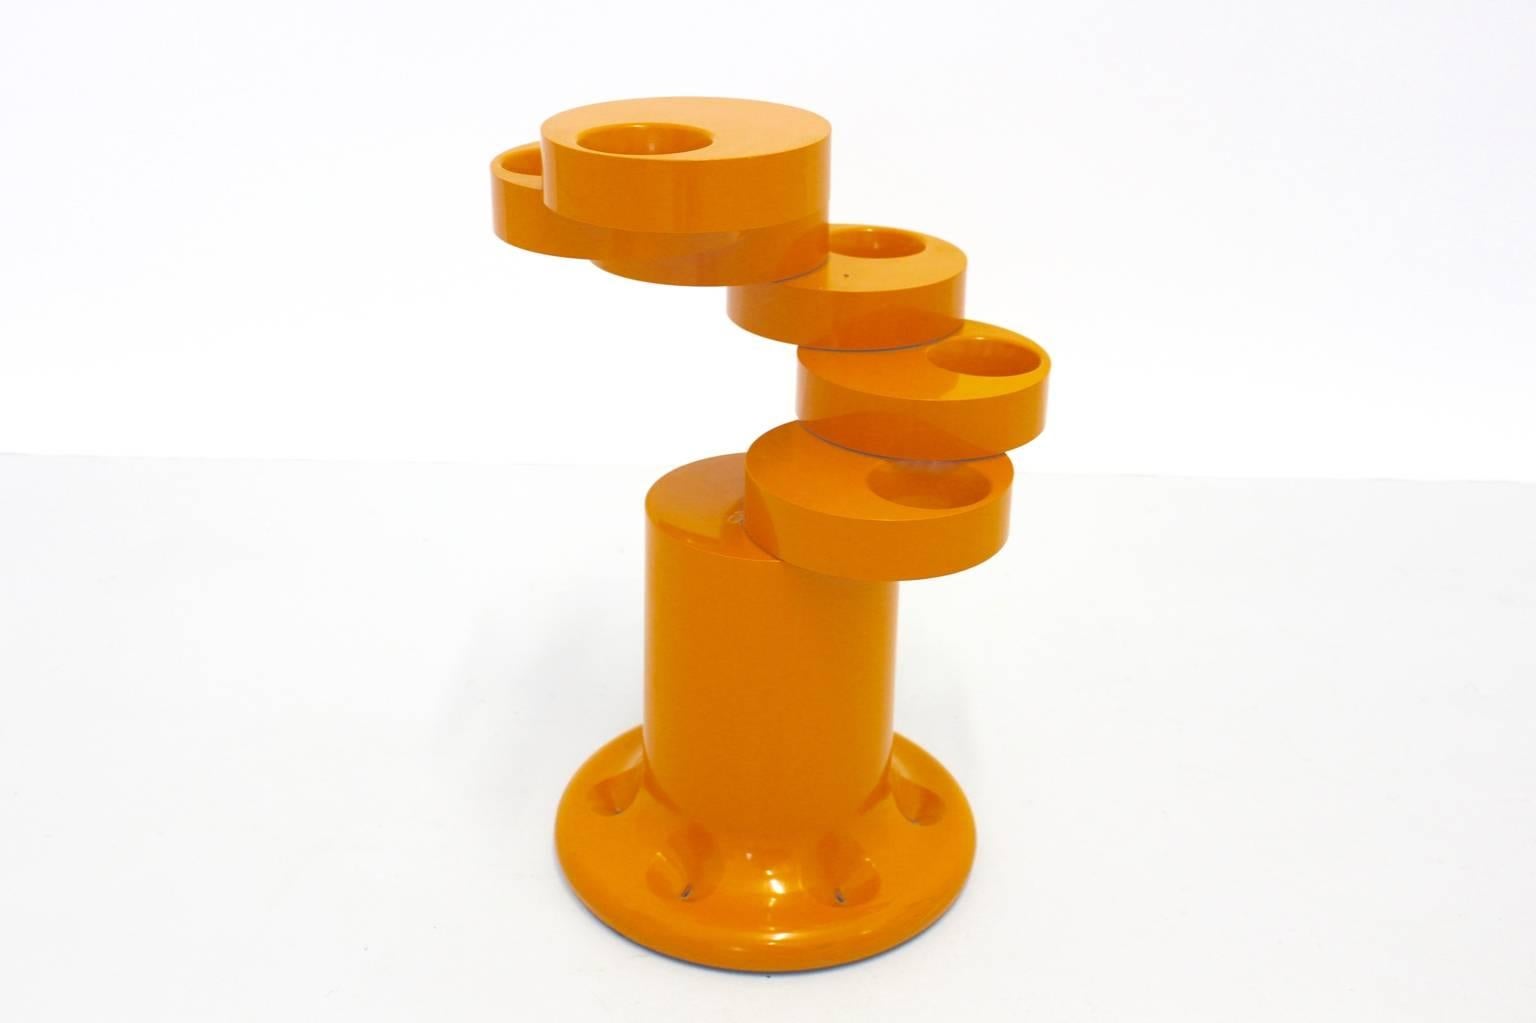 Orangefarbener Schirmständer namens Pluvium, entworfen von Giancarlo Piretti und ausgeführt von Aanonima Castelli, Italien, 1960er Jahre.
Ein erstaunlicher Schirmständer aus Kunststoff in der Farbe Orange, der sechs Schirme aufnehmen kann, wenn der